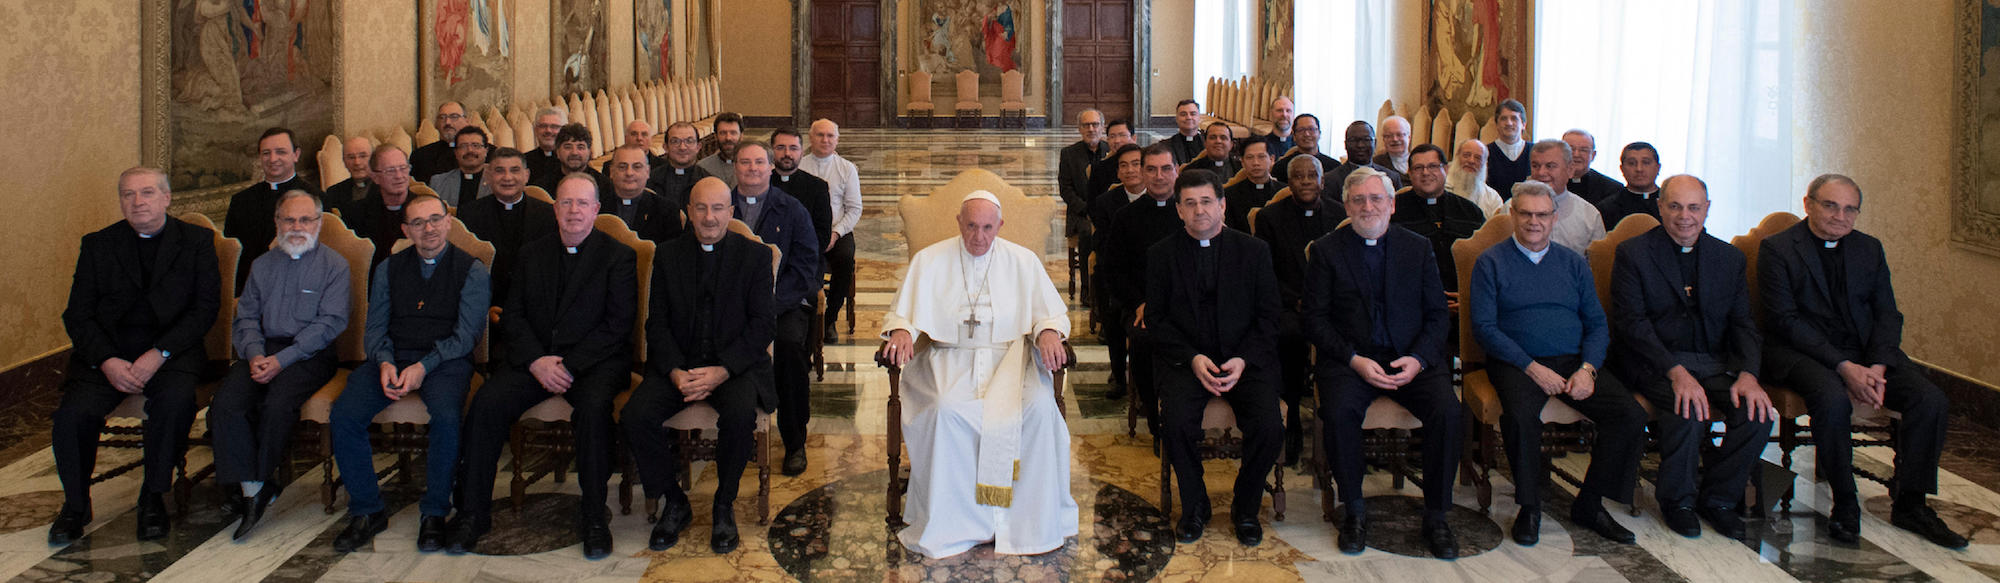 Lunedì 29 ottobre 2018 papa Francesco ha incontrato in udienza i padri scalabriniani che hanno preso parte al XV Capitolo generale. Padre Chiarello: “Il nostro carisma è accompagnare i migranti e chi li accoglie”